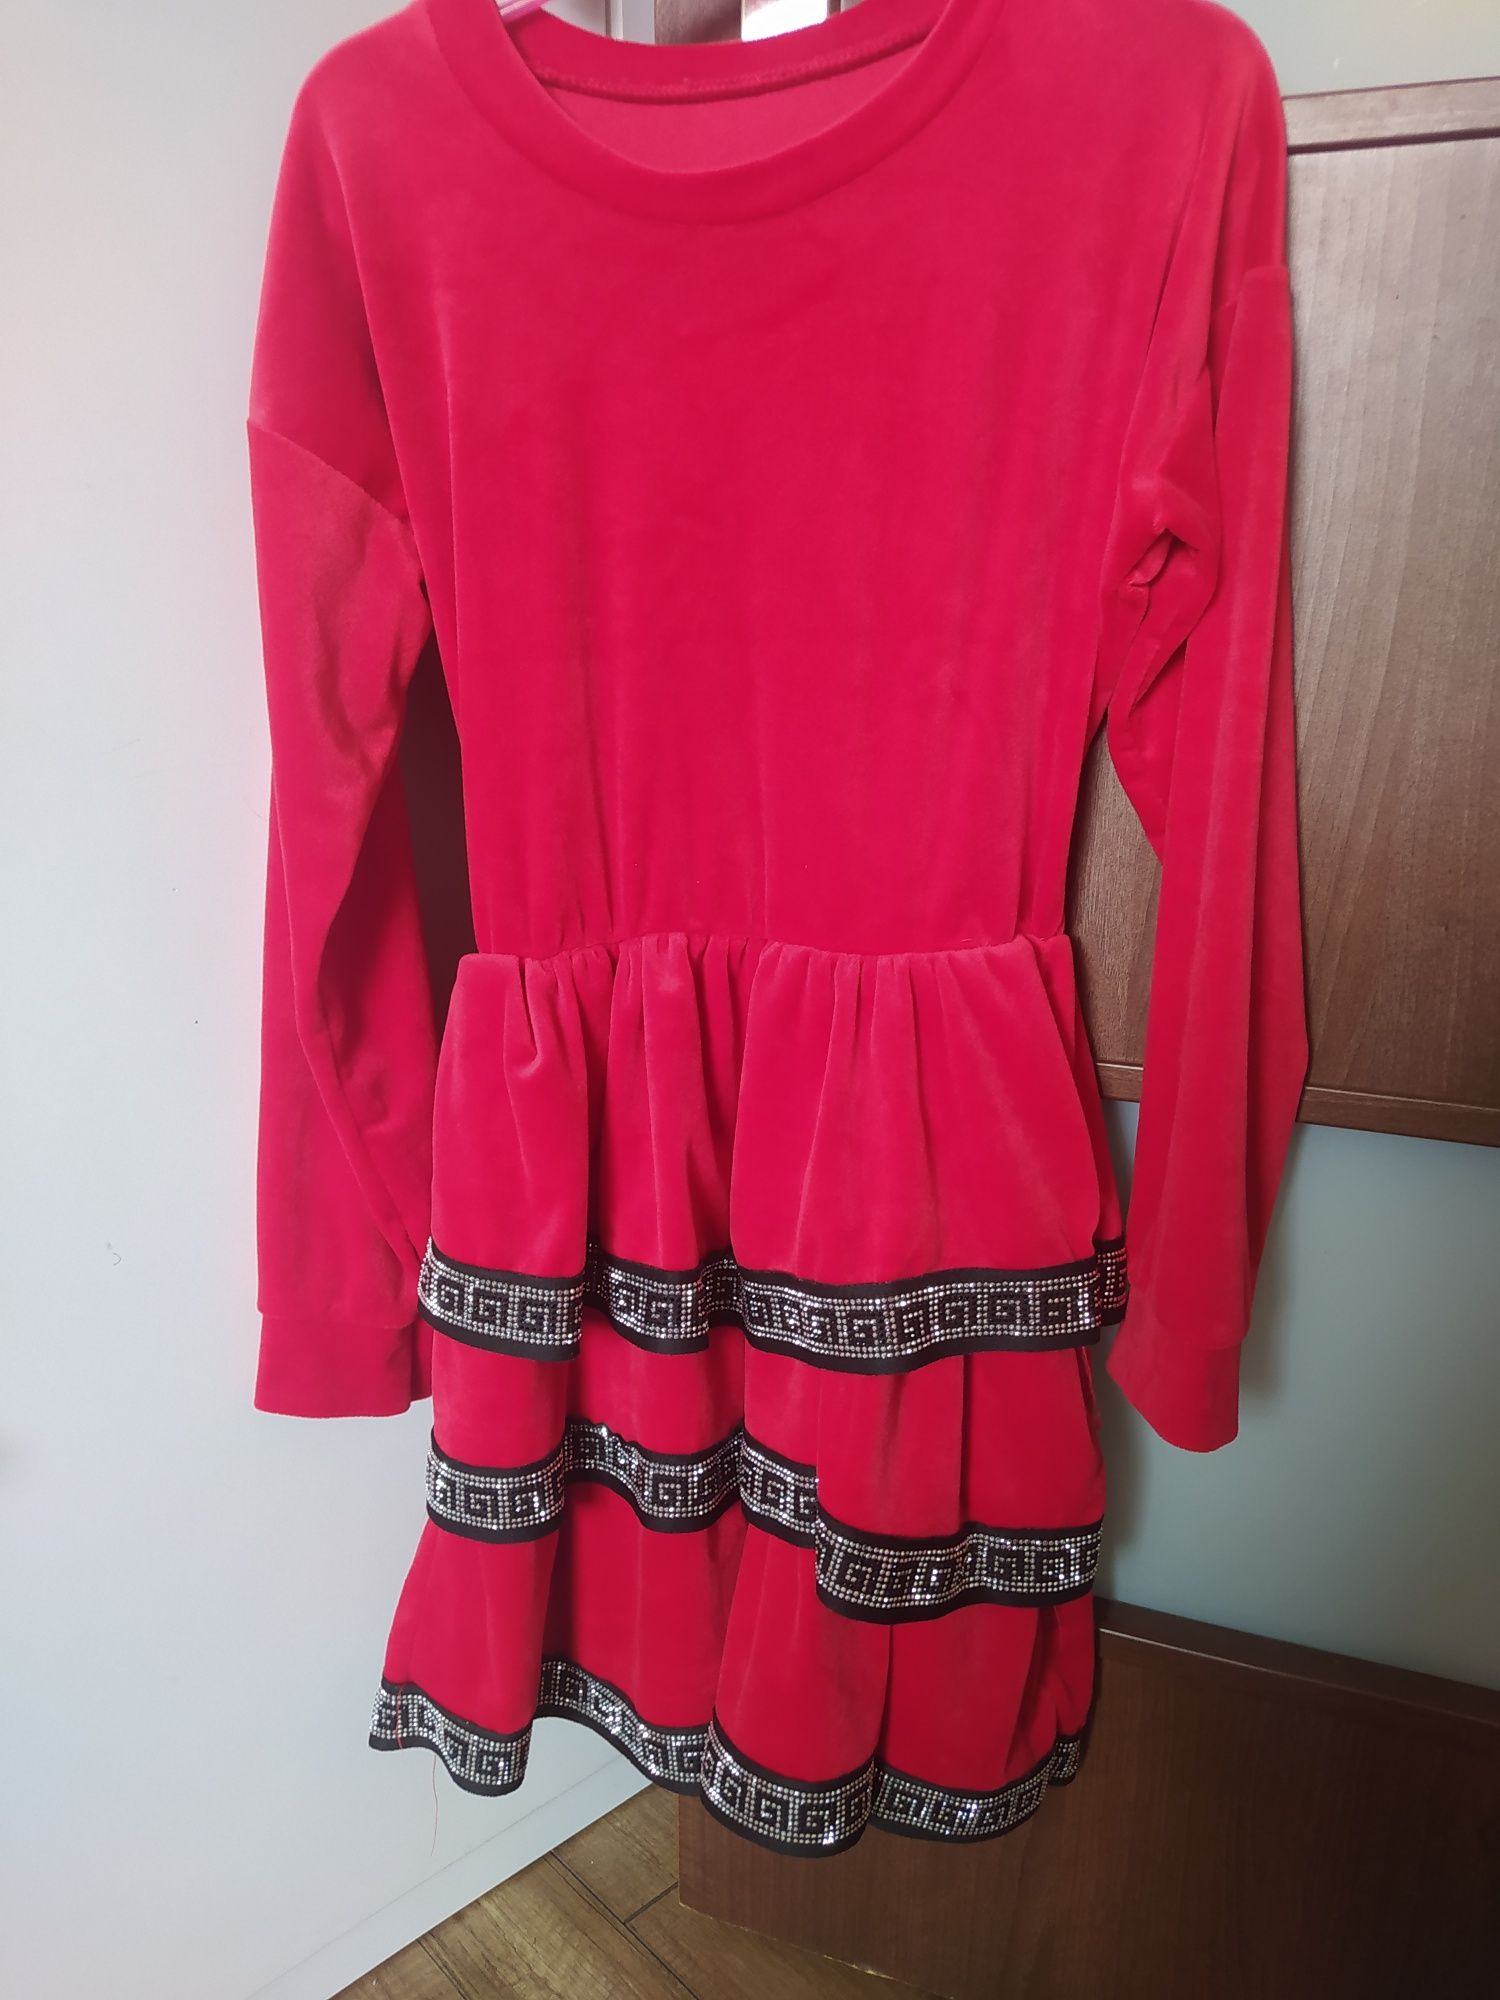 Sukienka czerwona 134